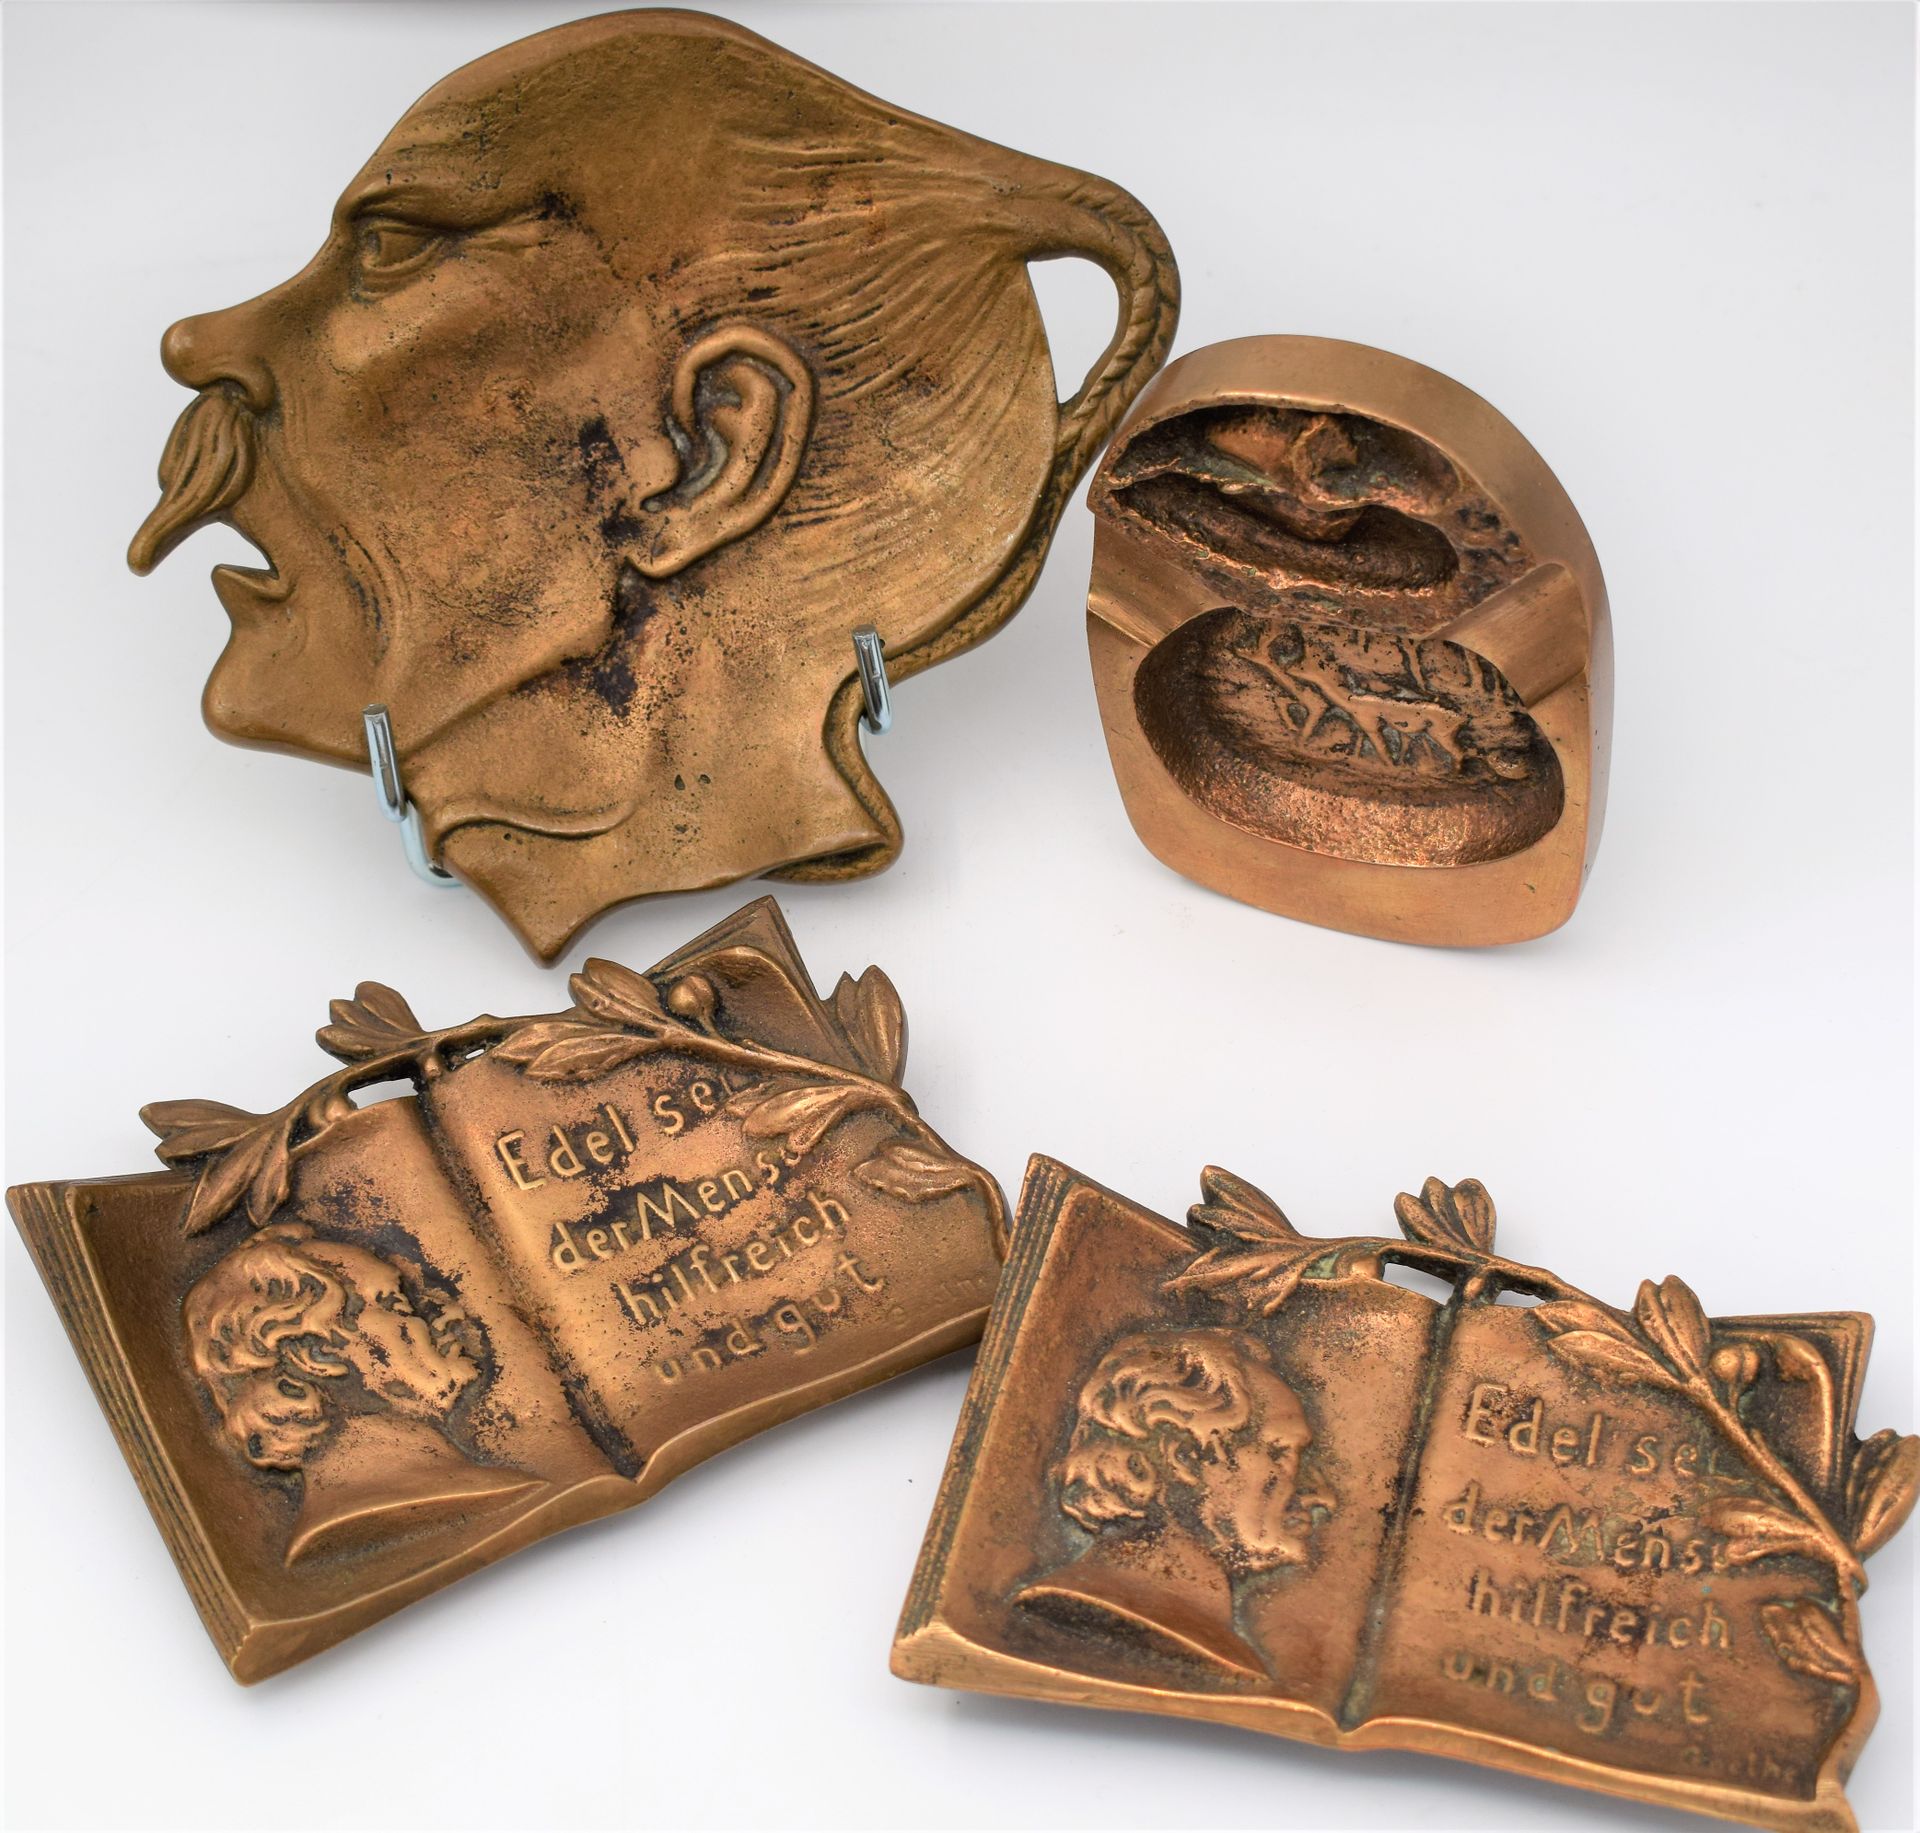 Null 青铜烟灰缸套装：1.中国头像（14 x 16.5厘米），2.2个向GOETHE致敬的 "Edel sei der Mensch, hilfreich &hellip;